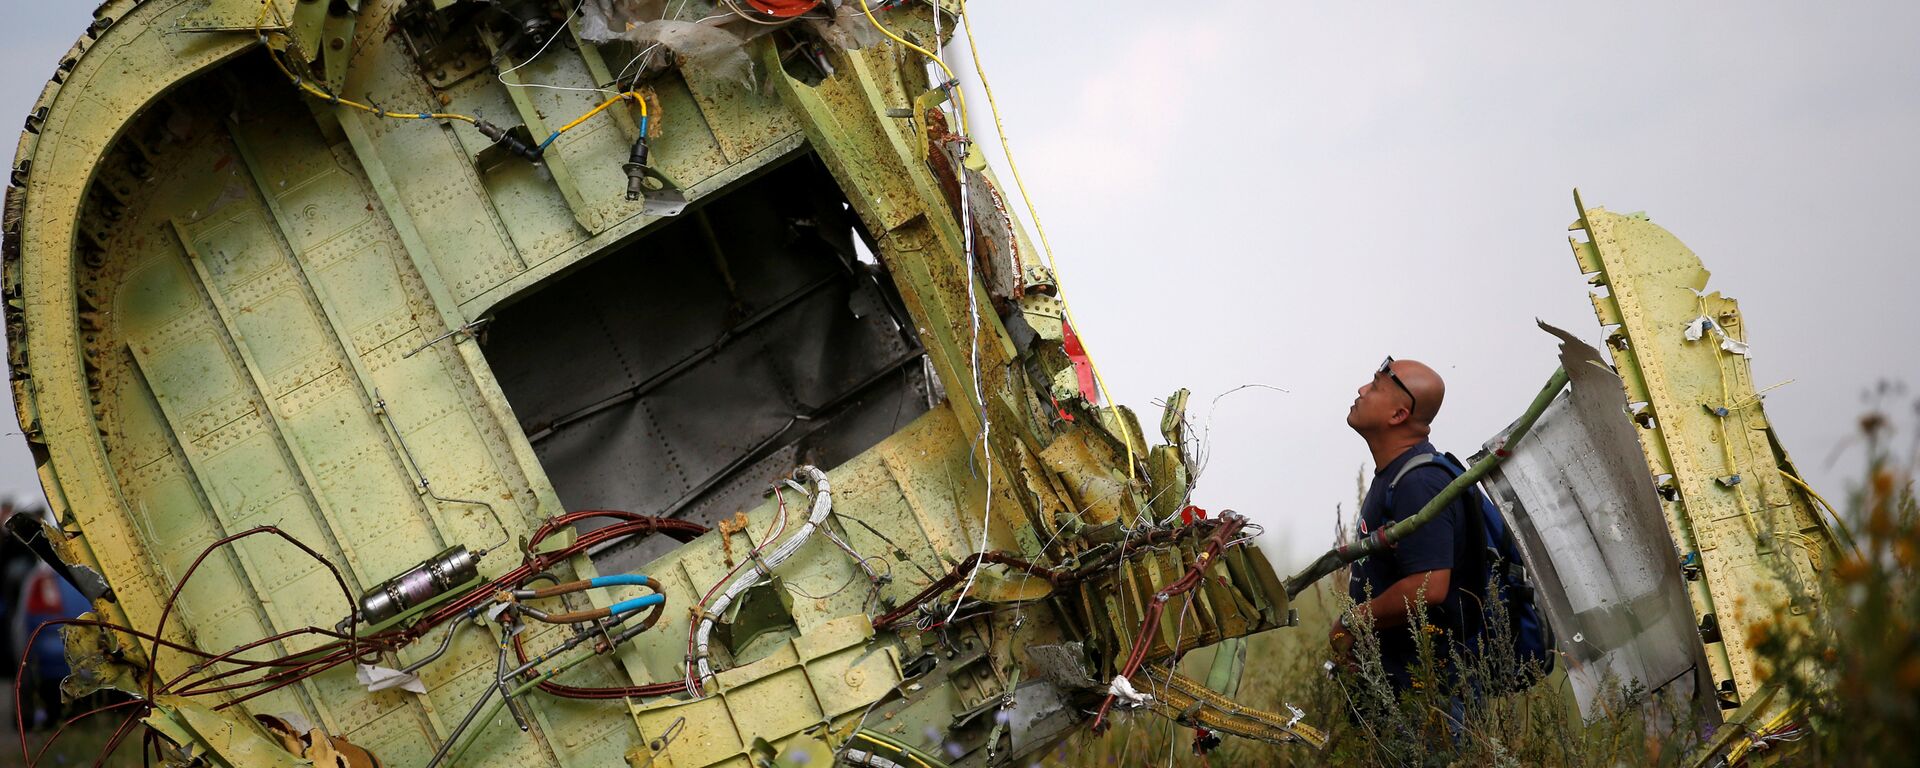 Lugar del siniestro del avión MH17 - Sputnik Mundo, 1920, 09.06.2021